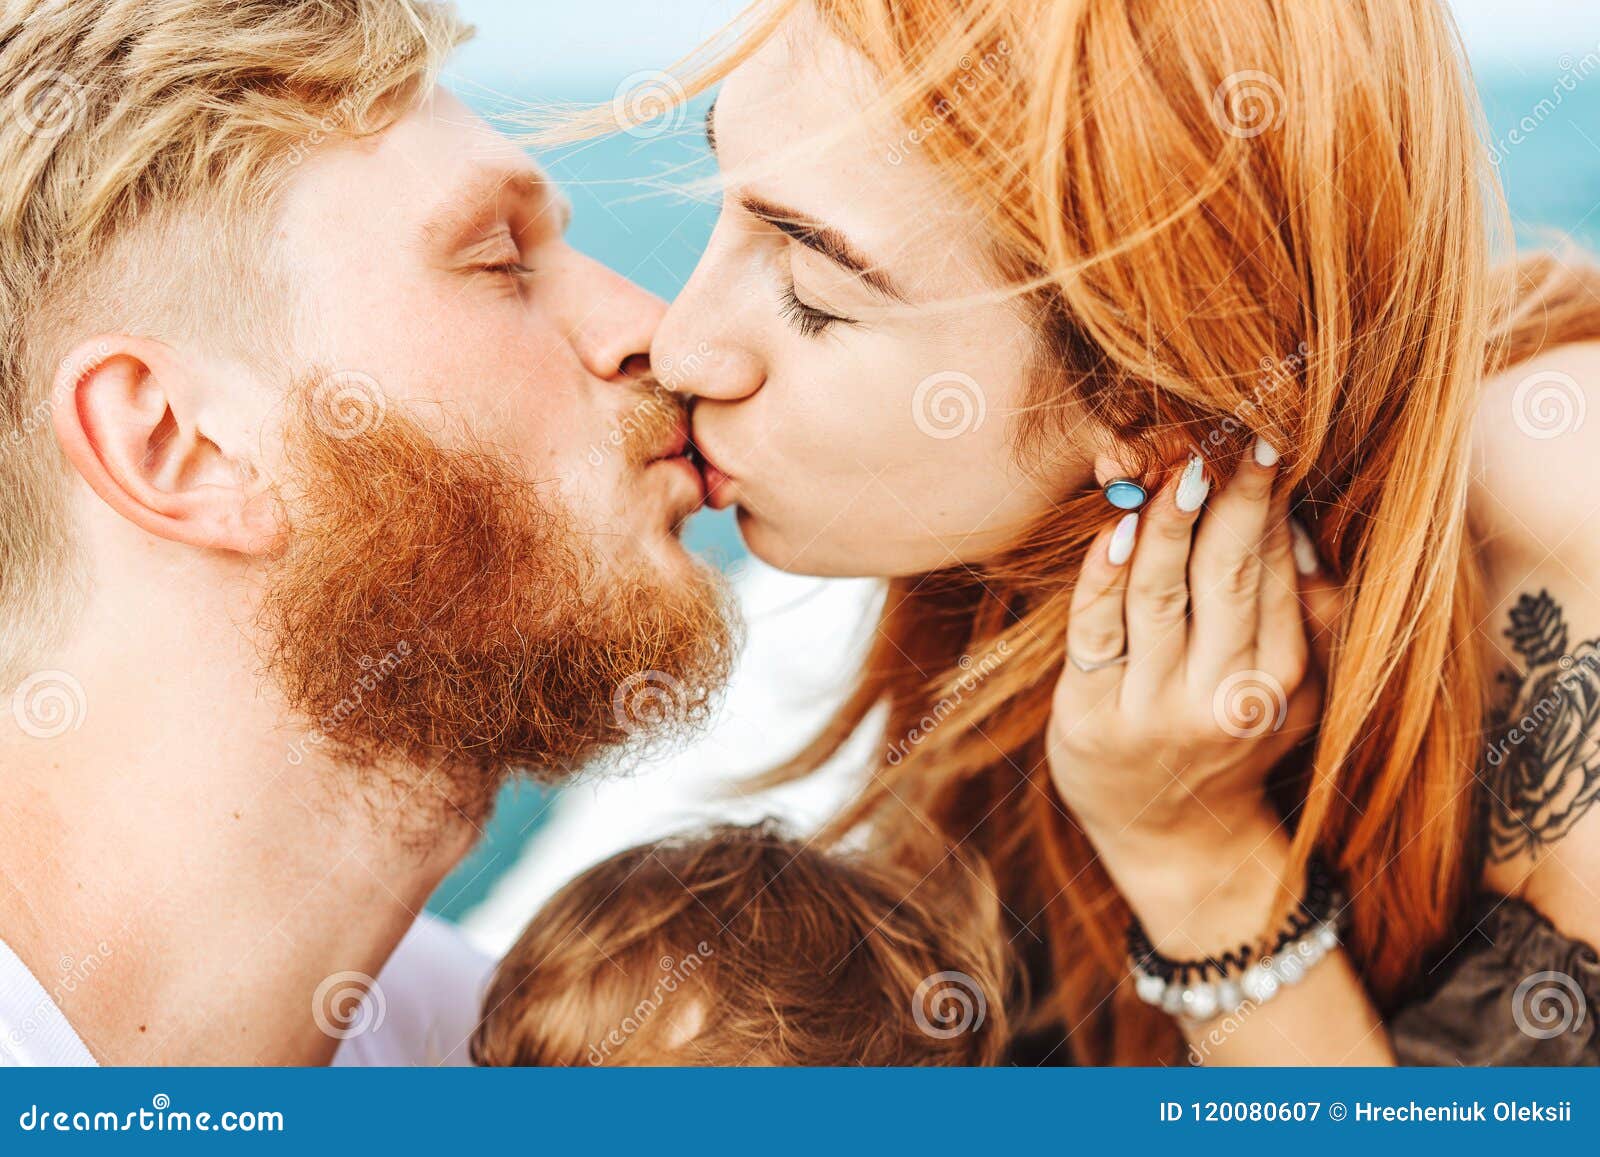 Мама папа поцелуй. Папа целует маму. Мама и папа целуются. Поцеловаться папа и дочь. Папа и мама целуются с языком.